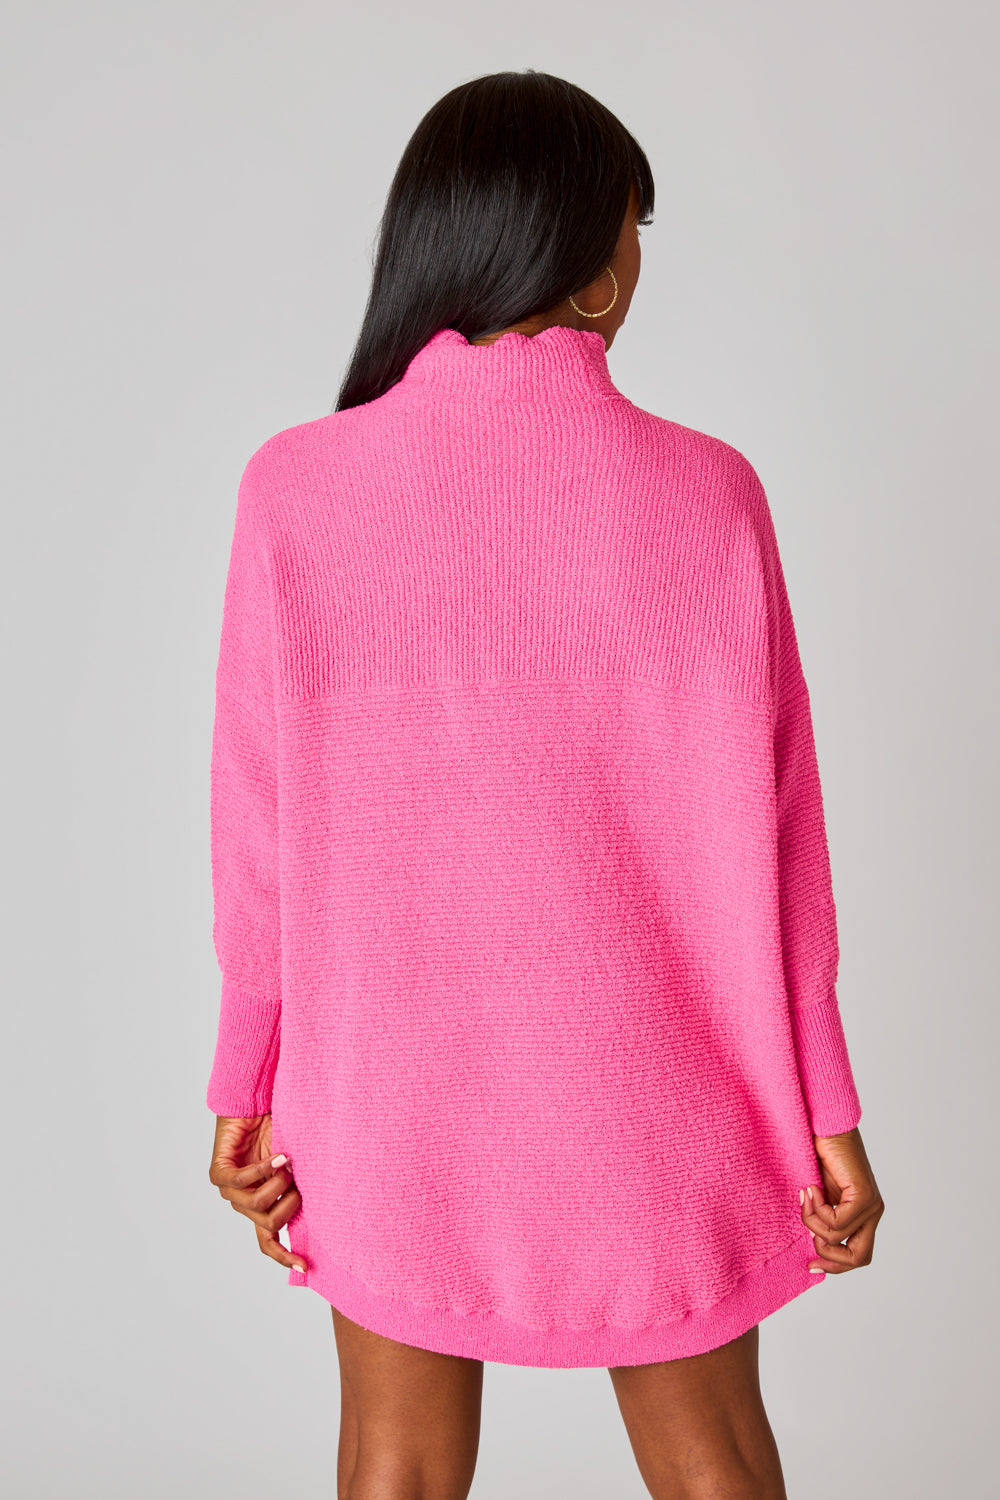 Wannabe Sweater Dress - Rose